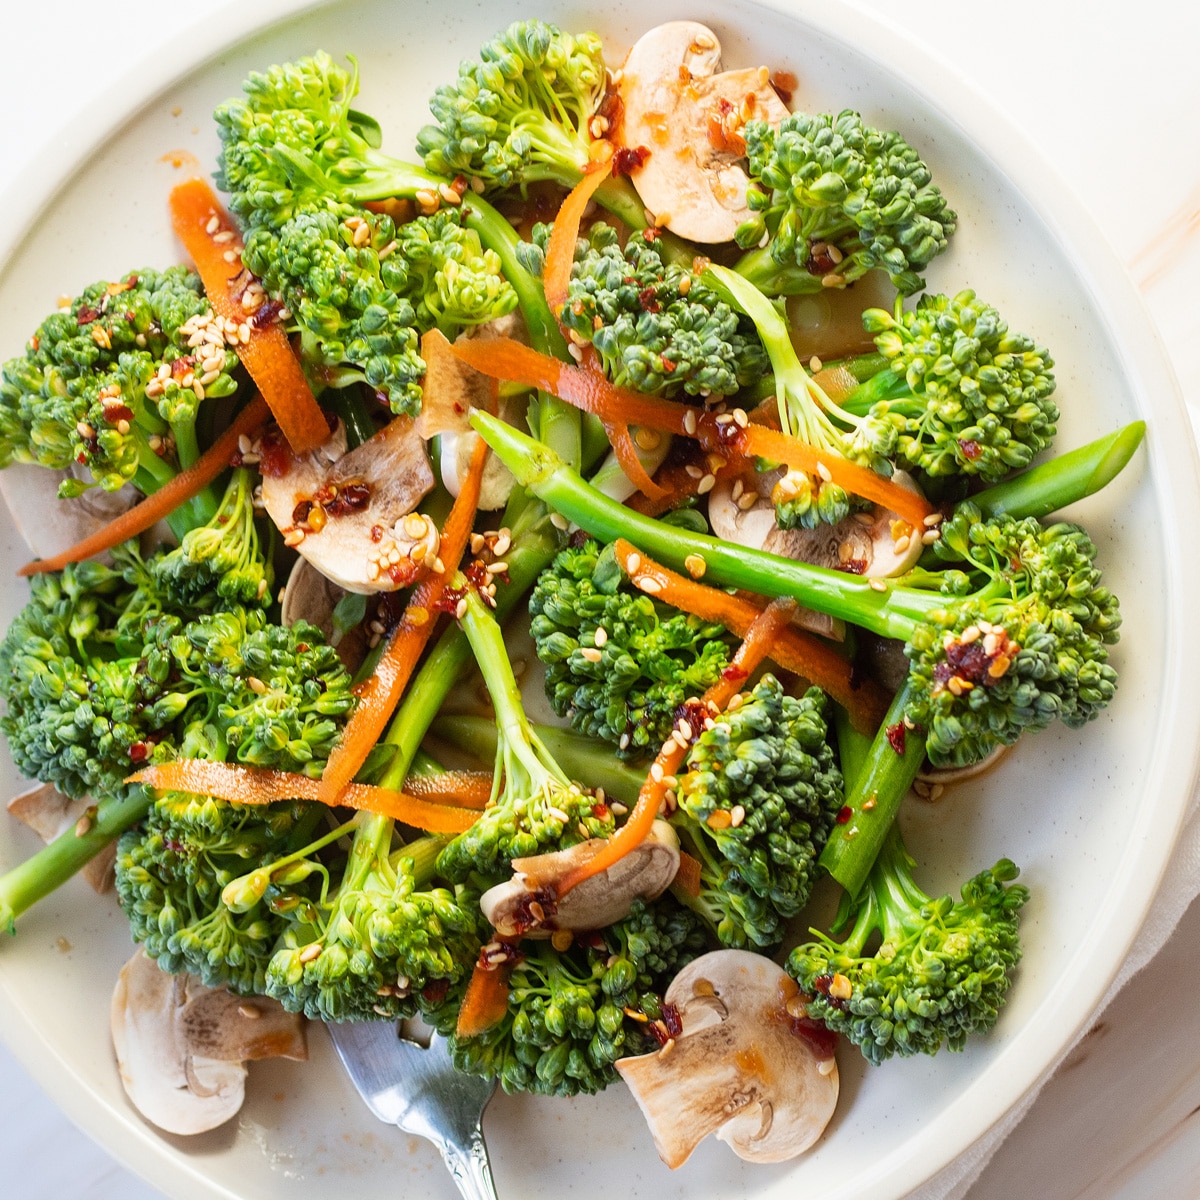 Salata od brokule na bijelom tanjuru s gljivama, obrijanom mrkvom i laganim azijskim preljevom.